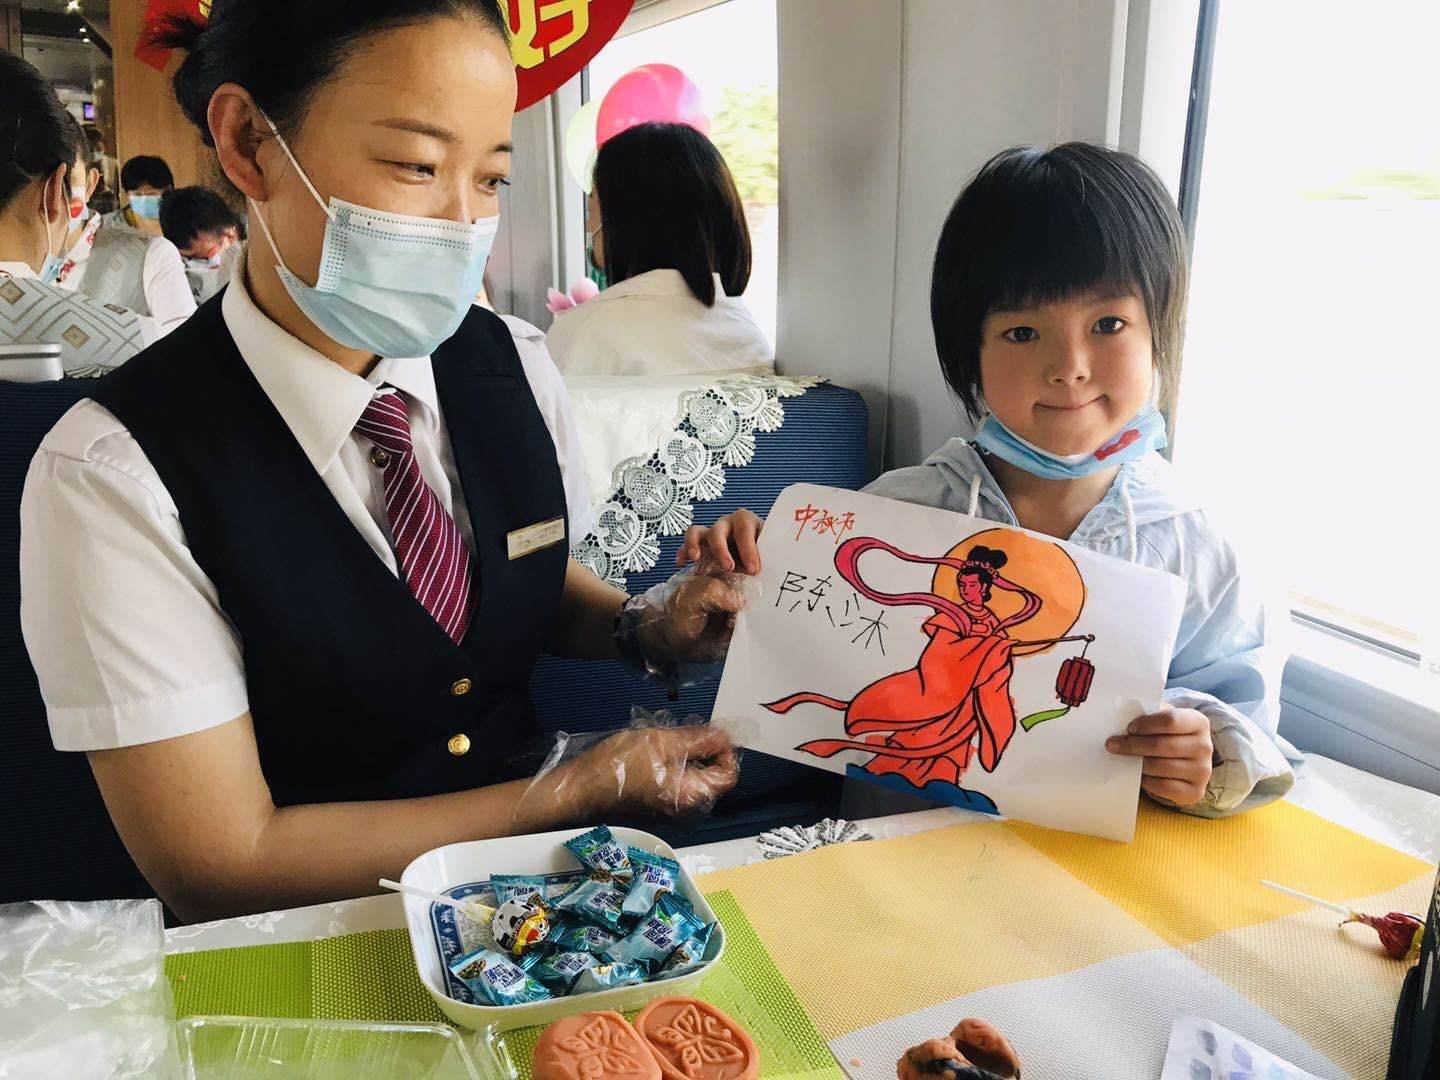 做月饼画嫦娥 从青岛到北京 高铁上乘务旅客共庆“双节”